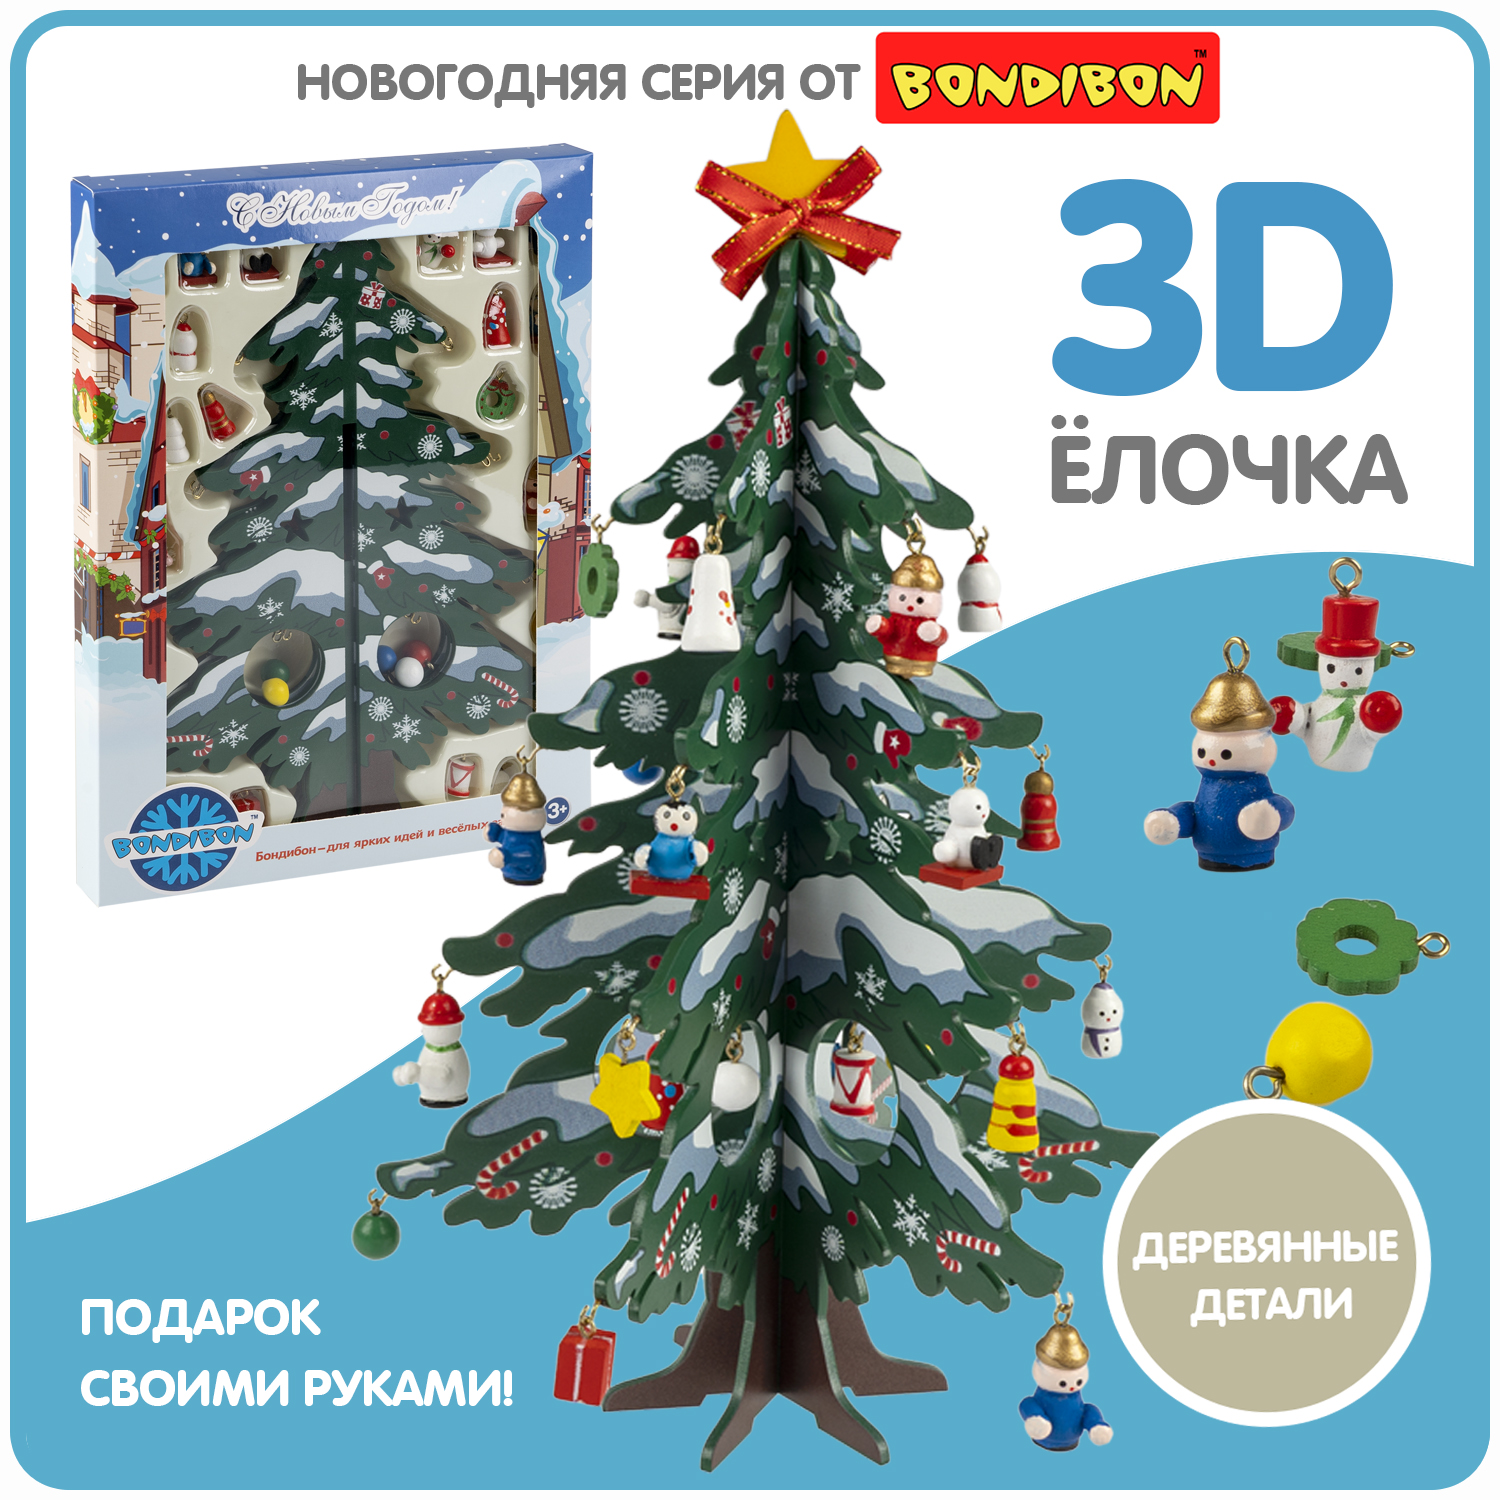 Новогодний набор Bondibon. Деревянная ёлочка 3D с игрушками, высота 28.5см